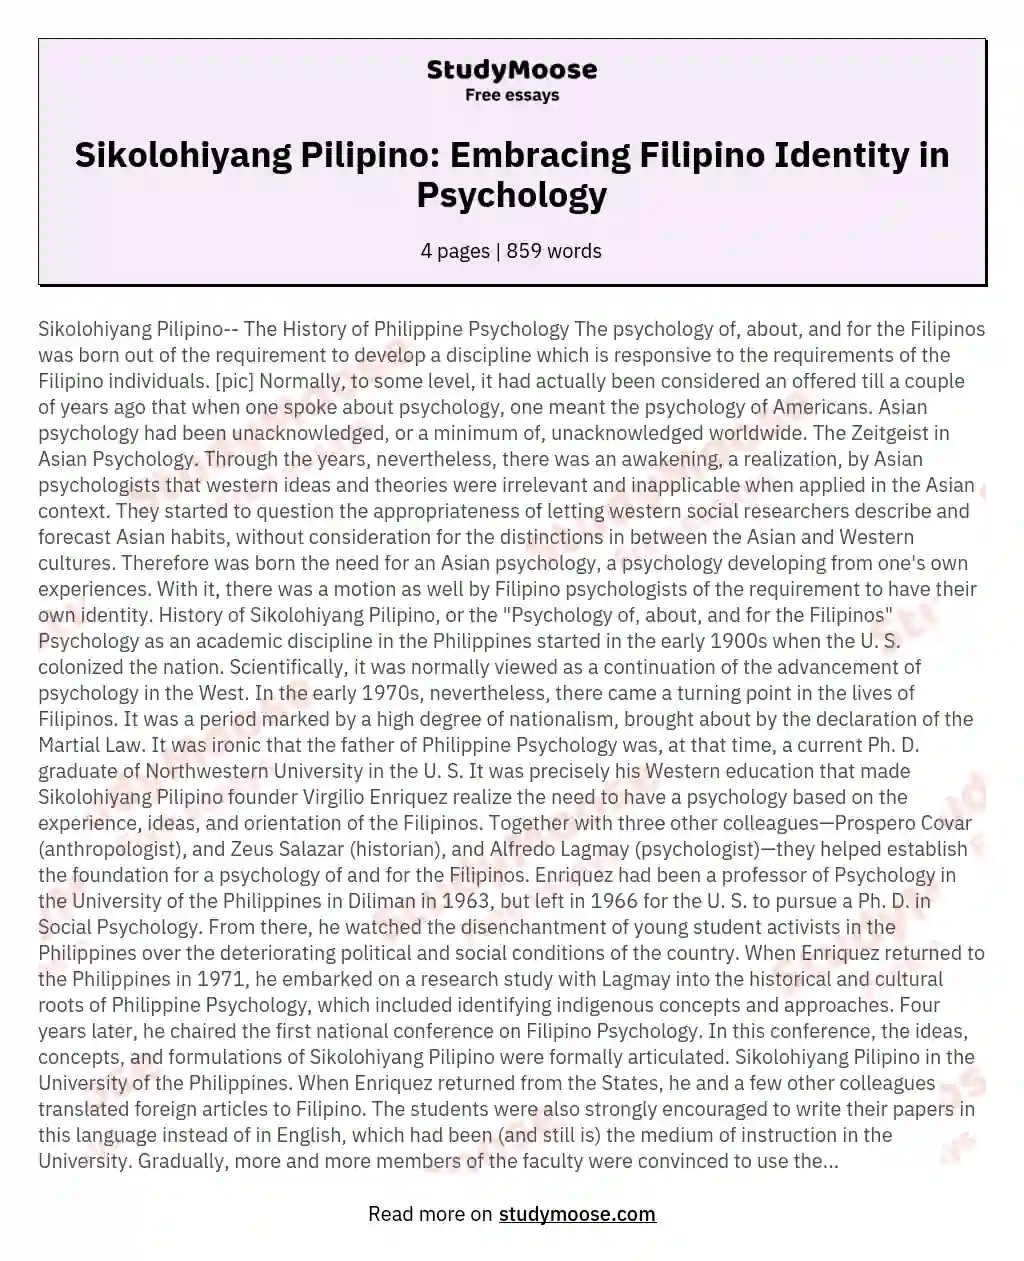 Sikolohiyang Pilipino: Embracing Filipino Identity in Psychology essay